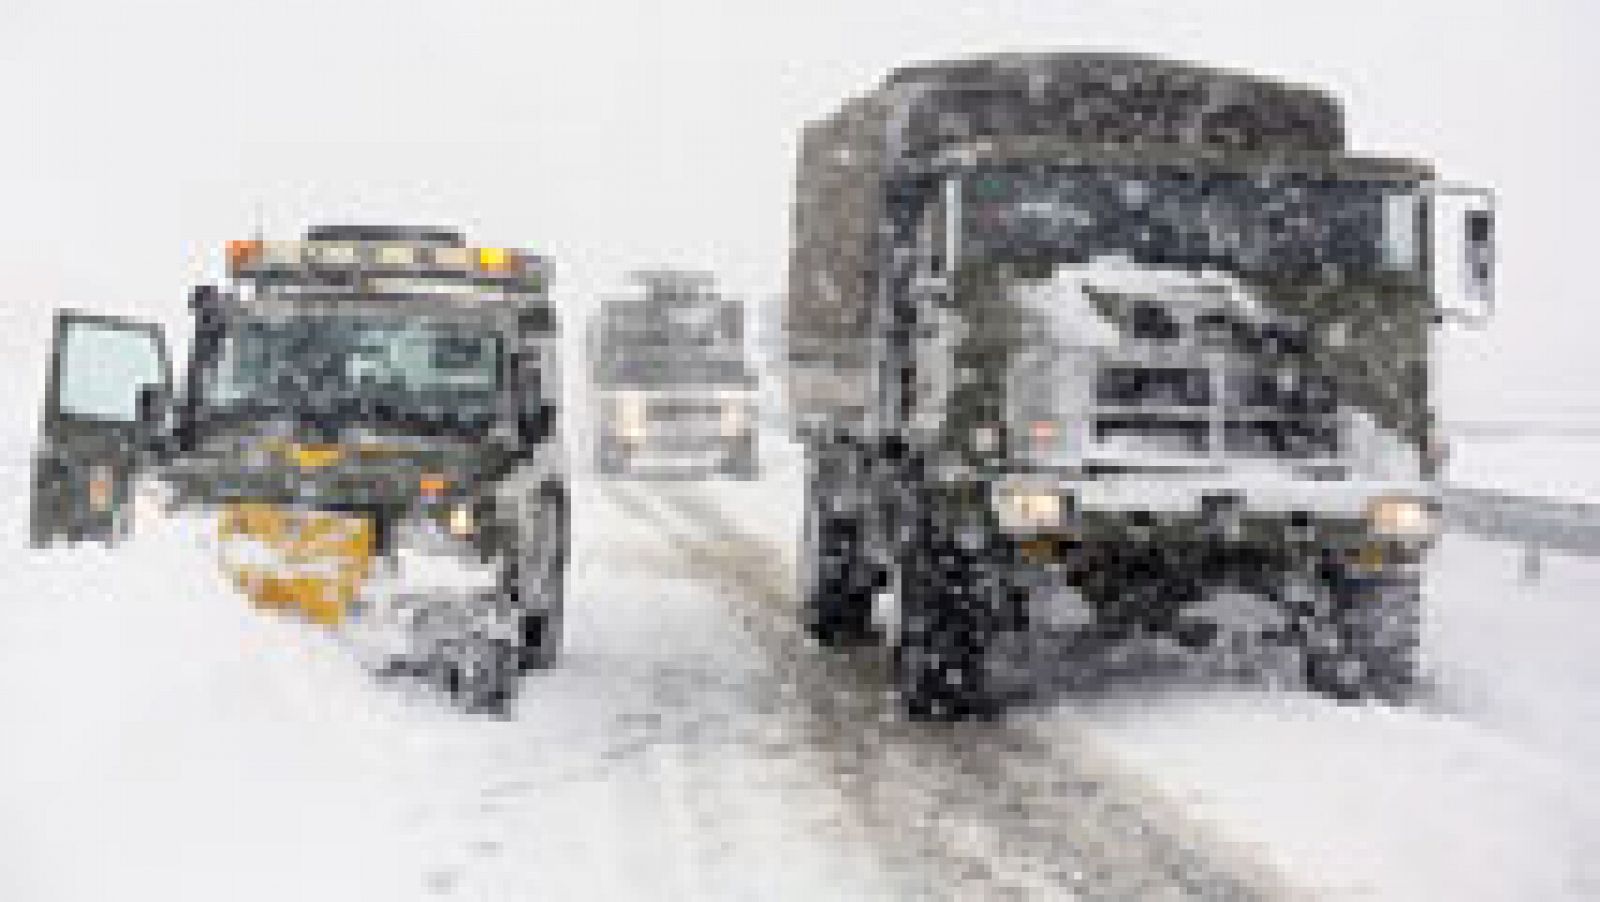 La Unidad Militar de Emergencias trabaja día y noche para abrir paso a los pueblos aislados por la nieve